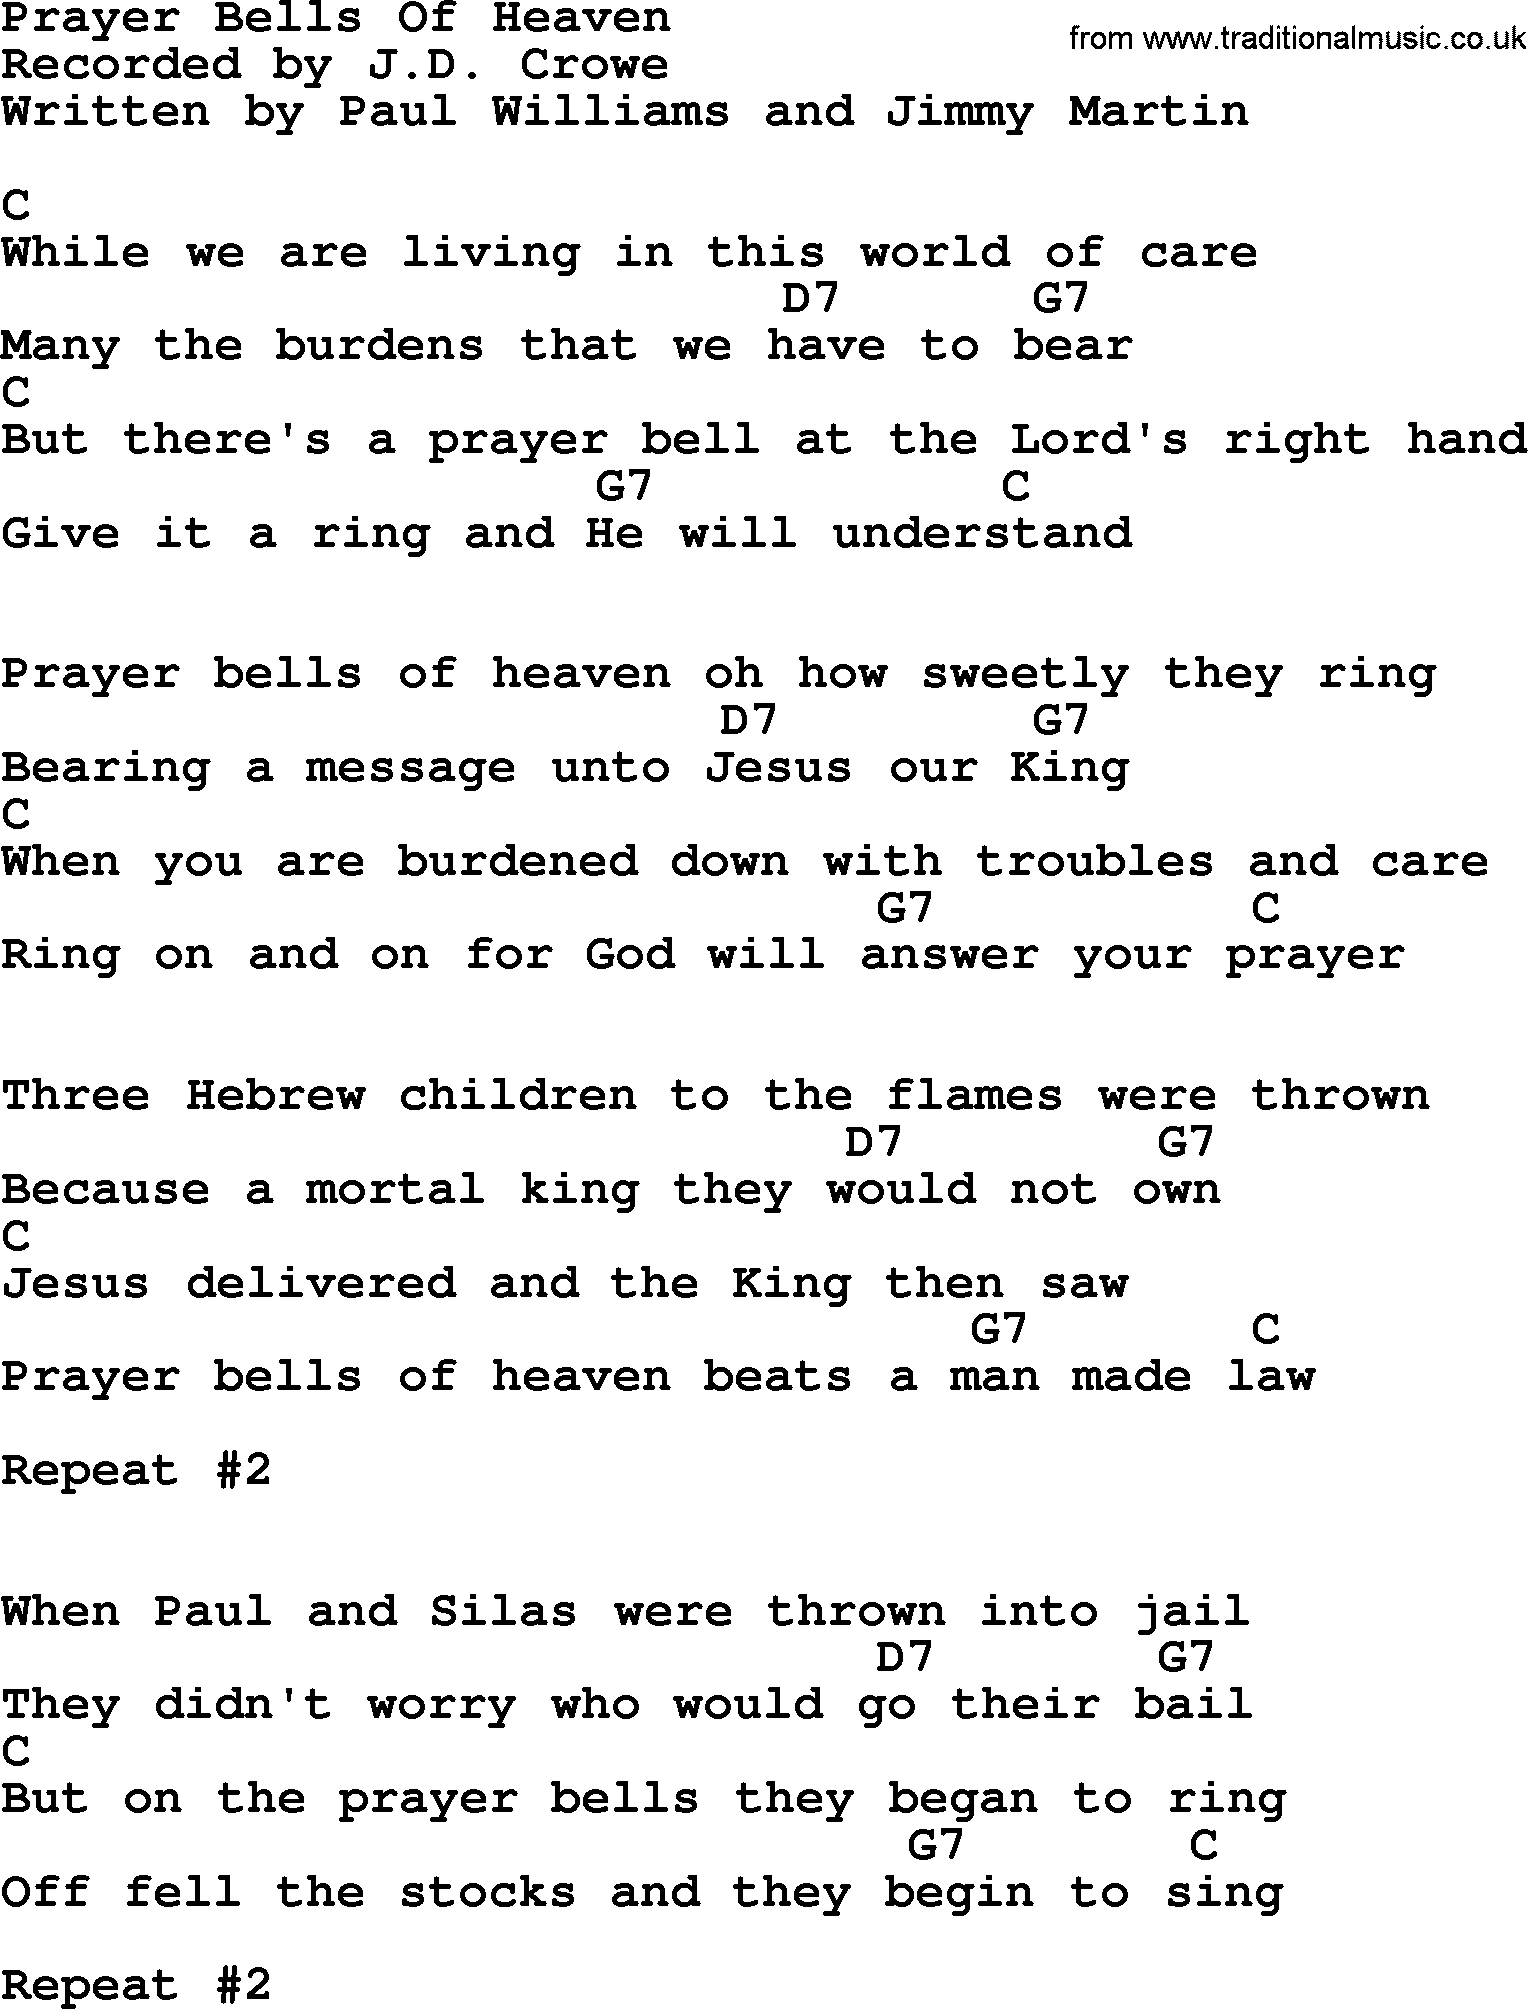 Bluegrass song: Prayer Bells Of Heaven, lyrics and chords